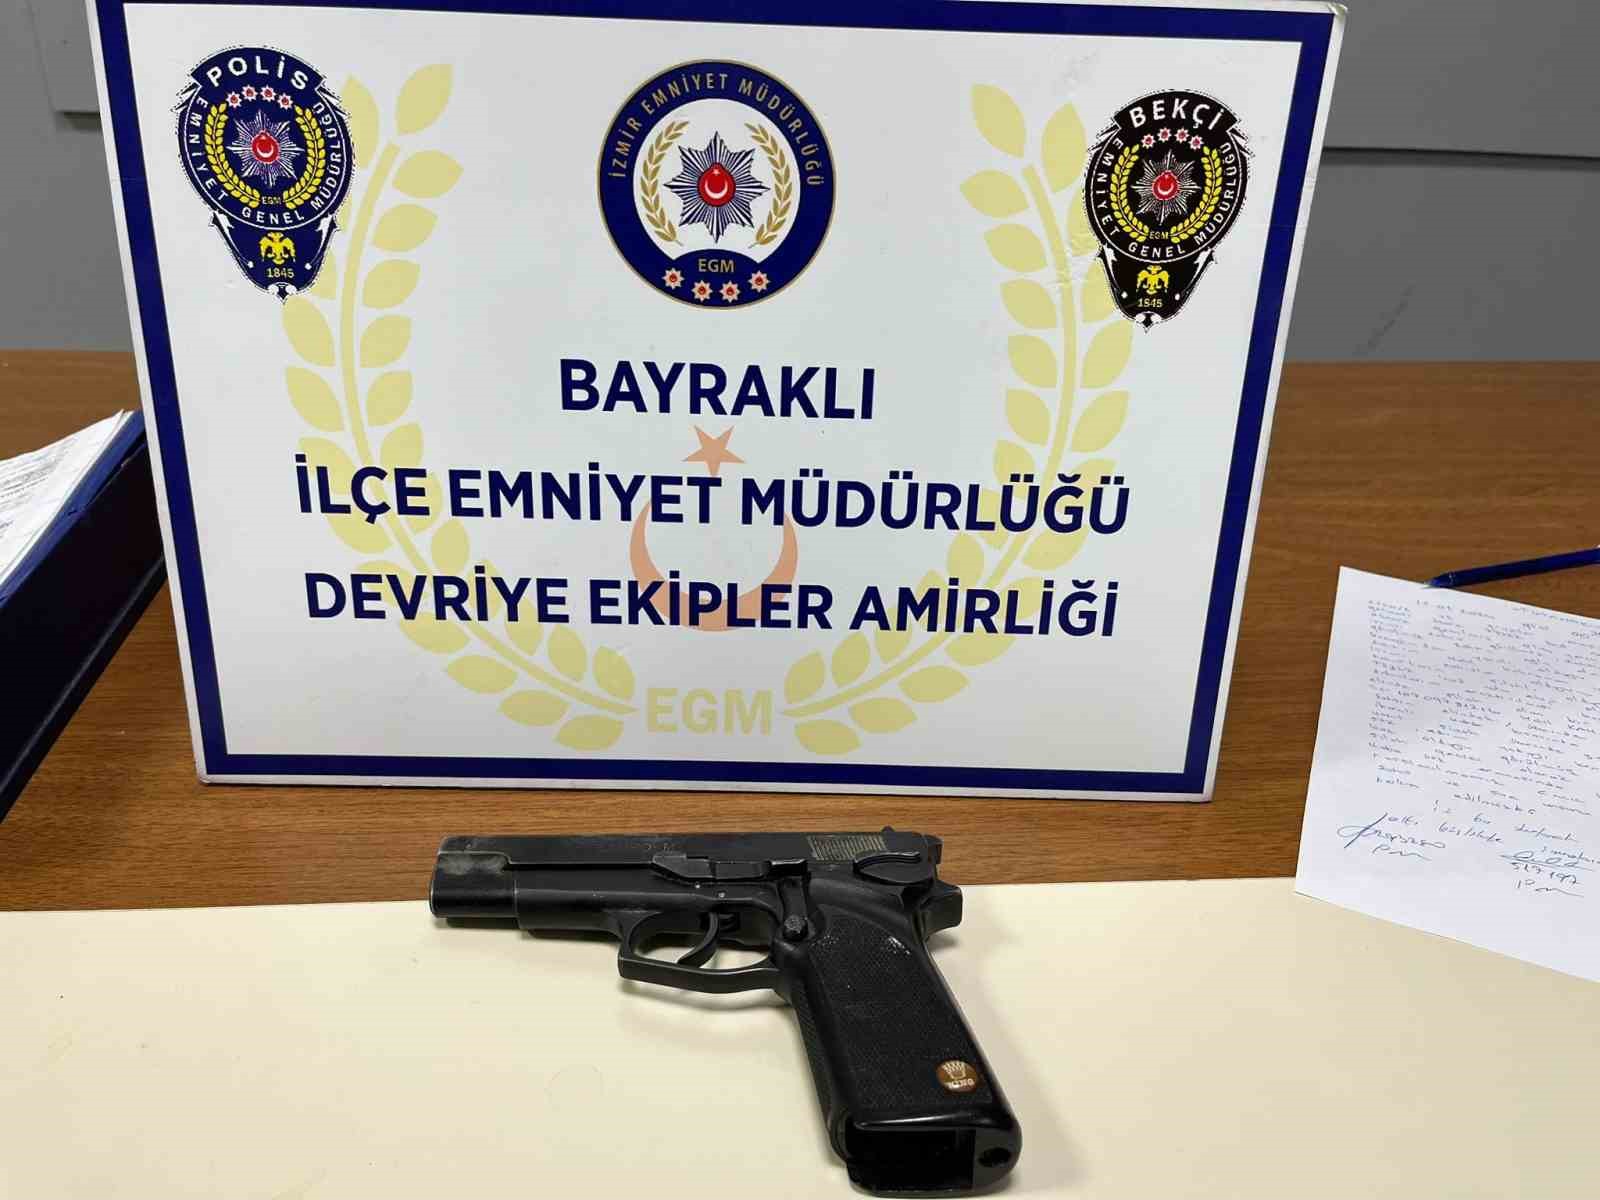 İzmir’de tabancayla yaralanan 2 kişiyi gözaltına alan çocuk, polis tarafından yakalandı.